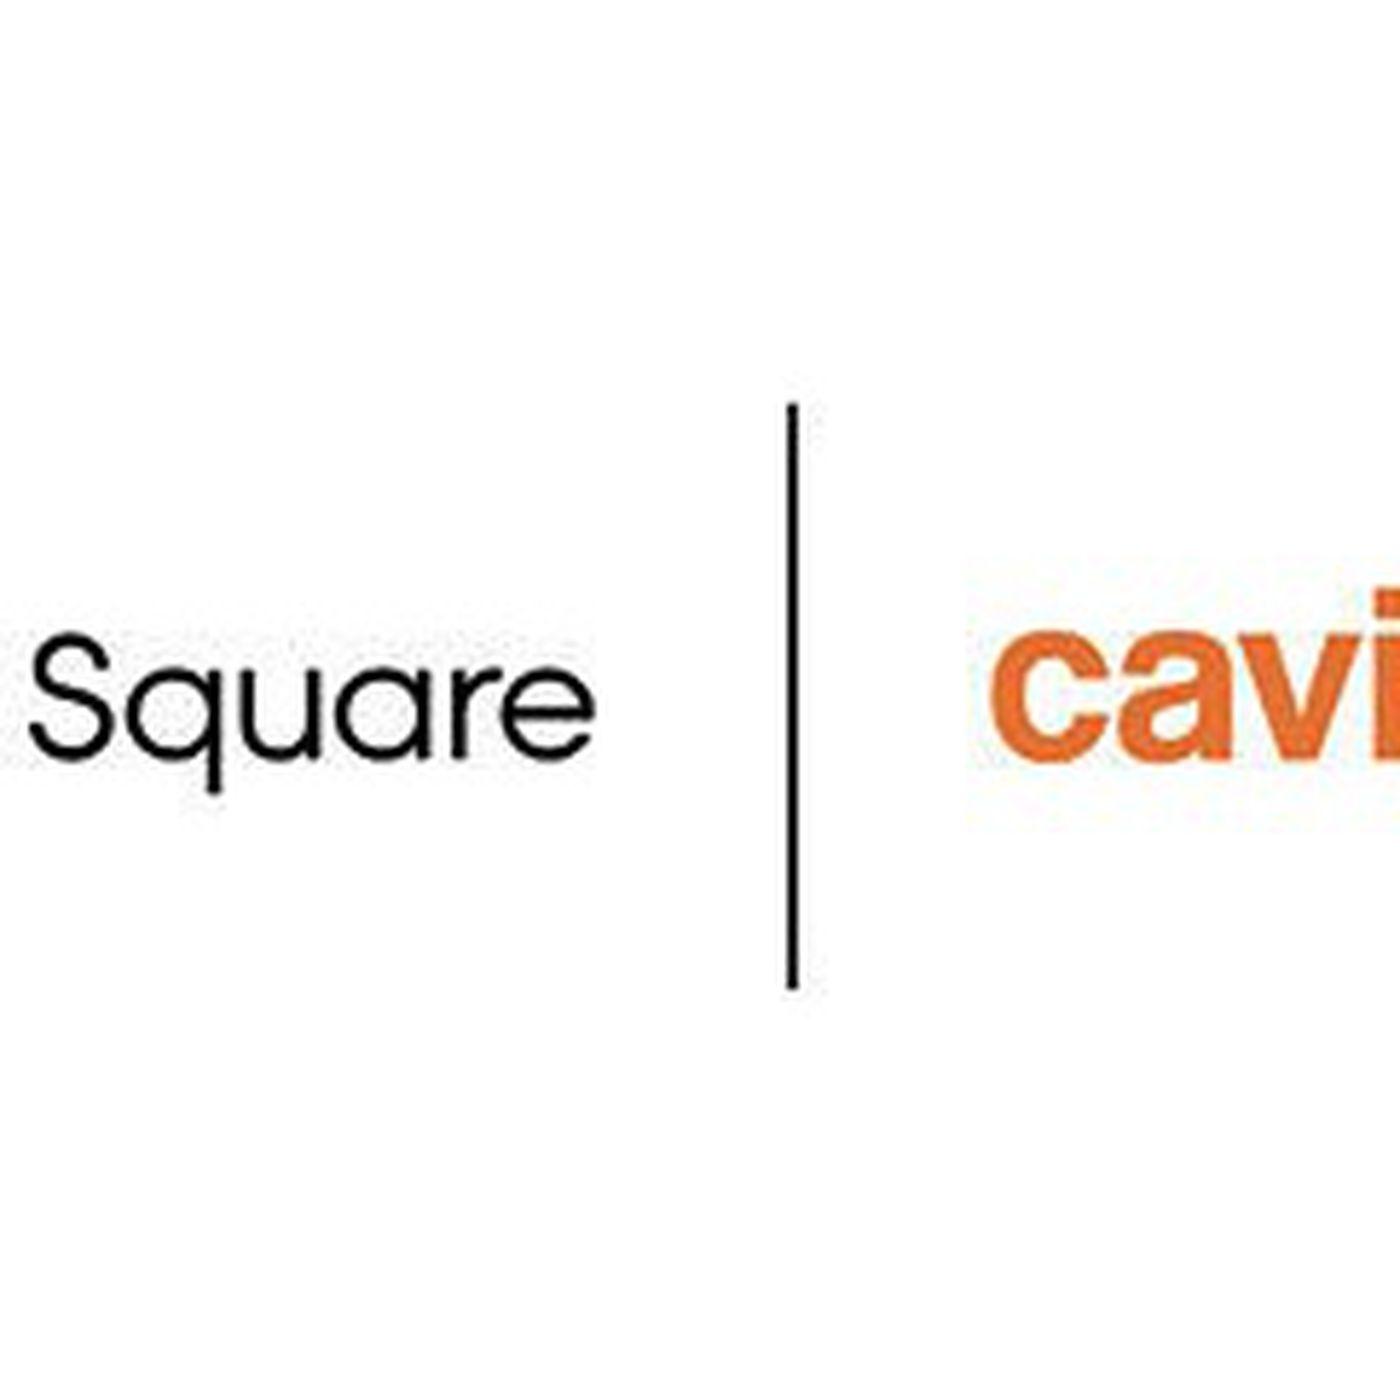 Caviar Logo - Square Acquires Food Delivery Service Caviar